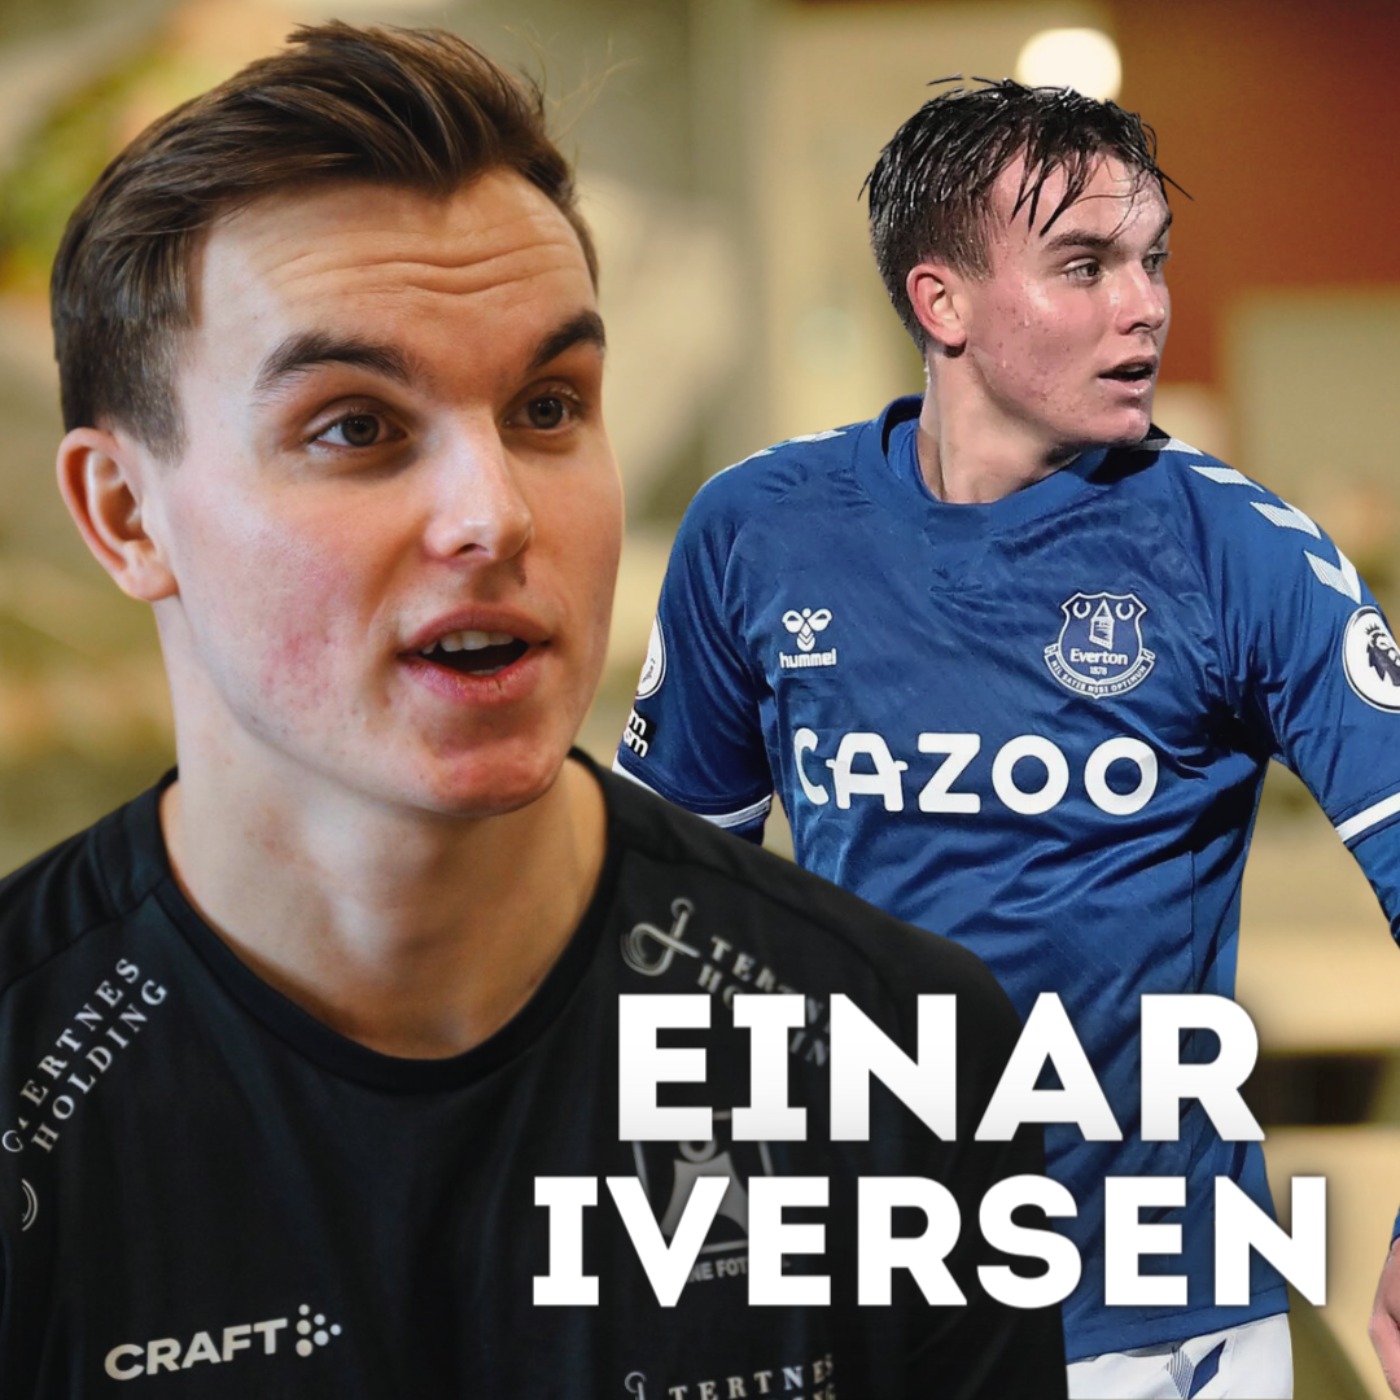 Einar Iversen